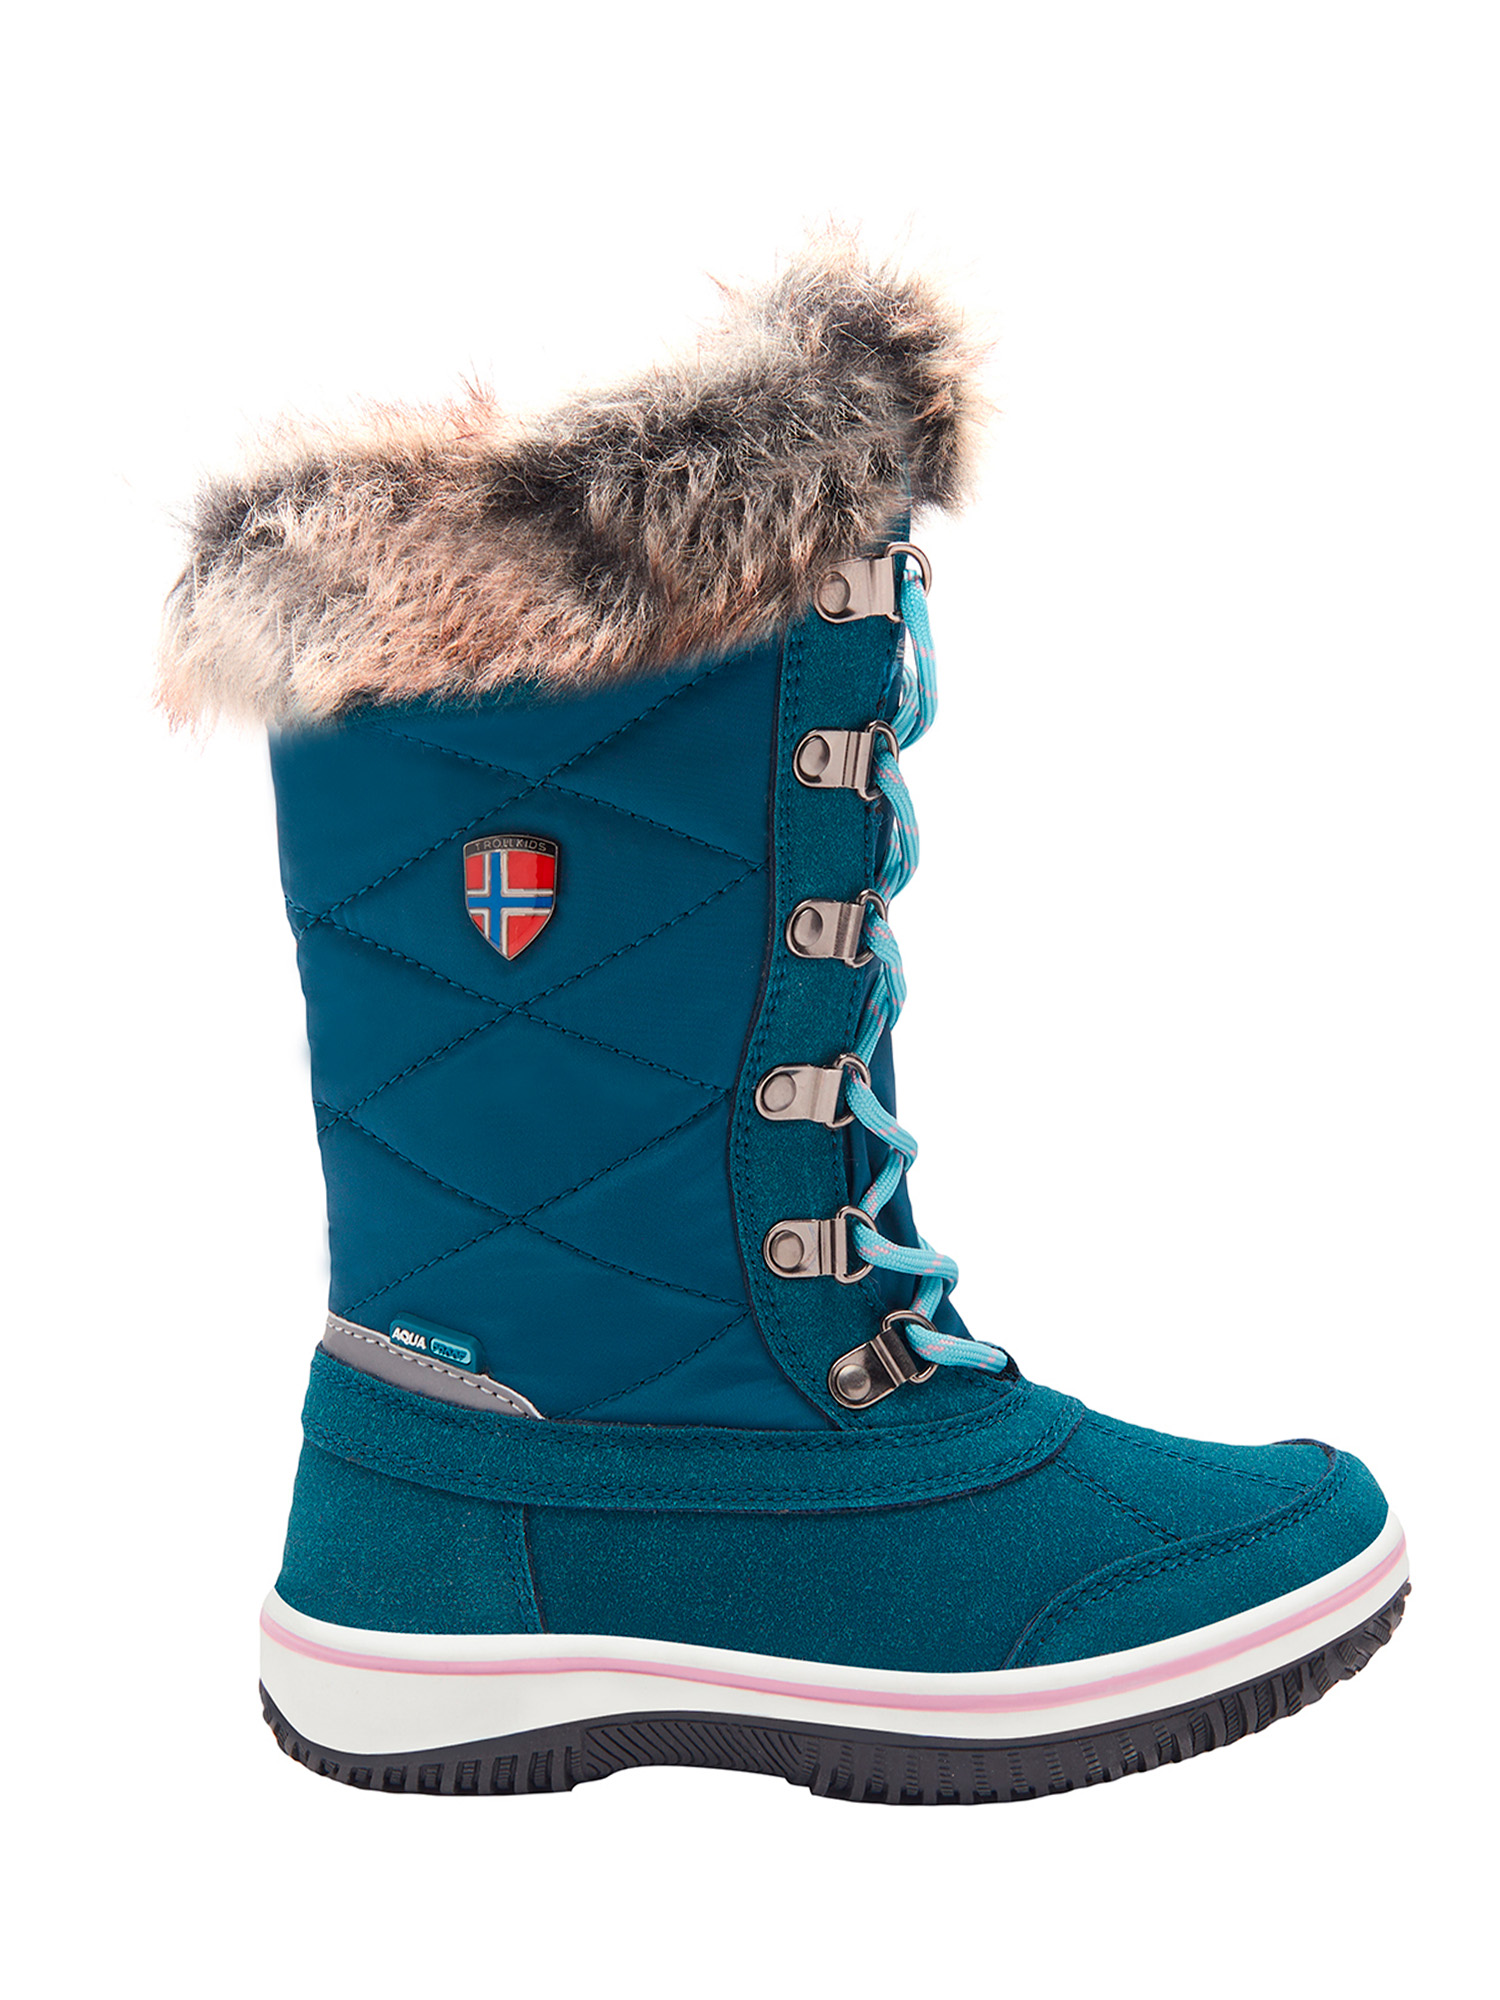 Ботинки Trollkids Girls Holmenkollen Snow Boots, голубой, 28